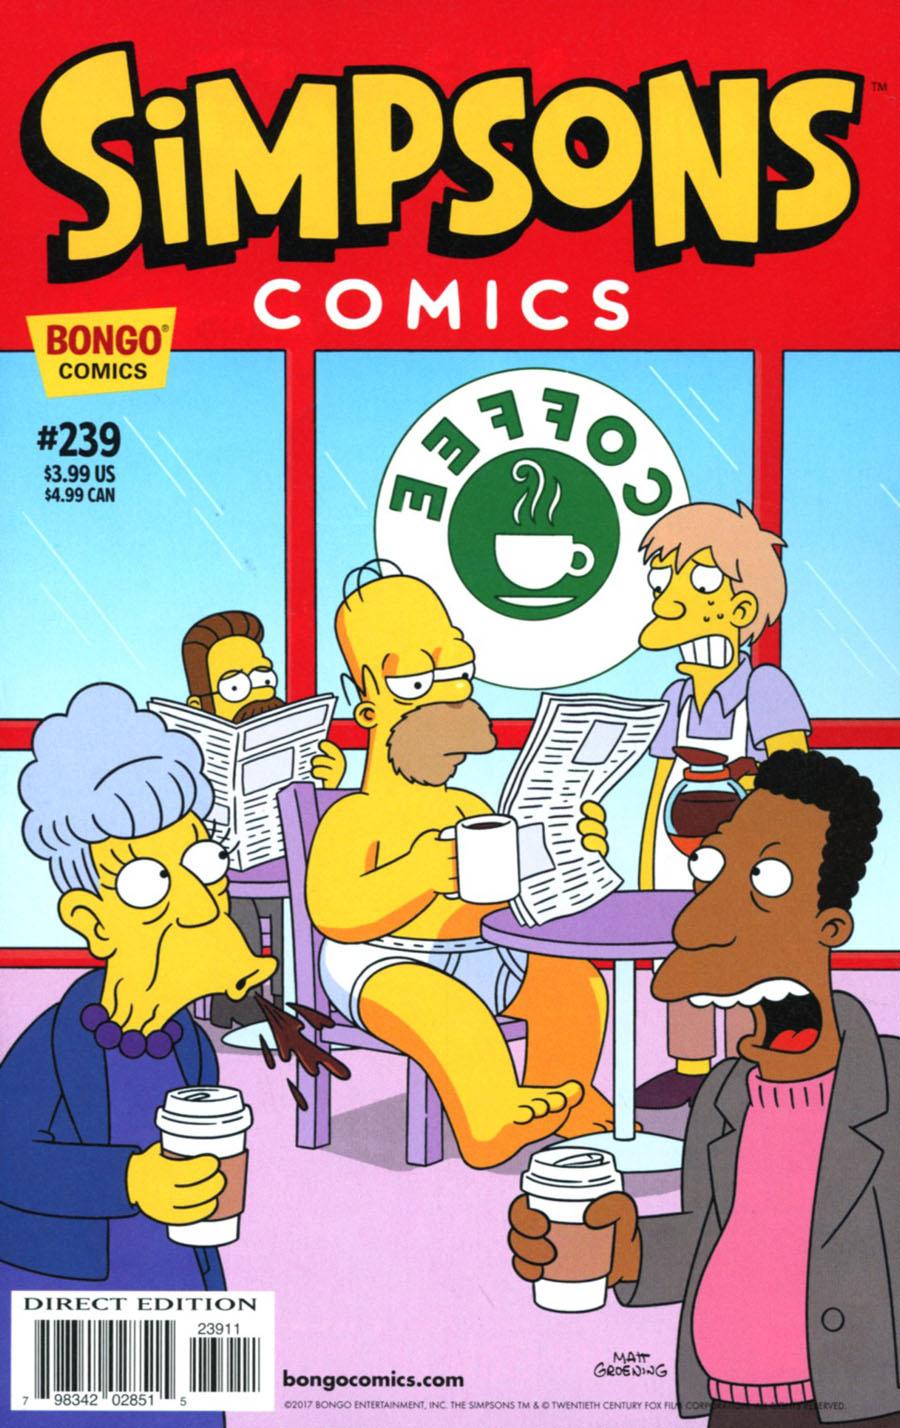 Simpsons Comics Vol. 1 #239